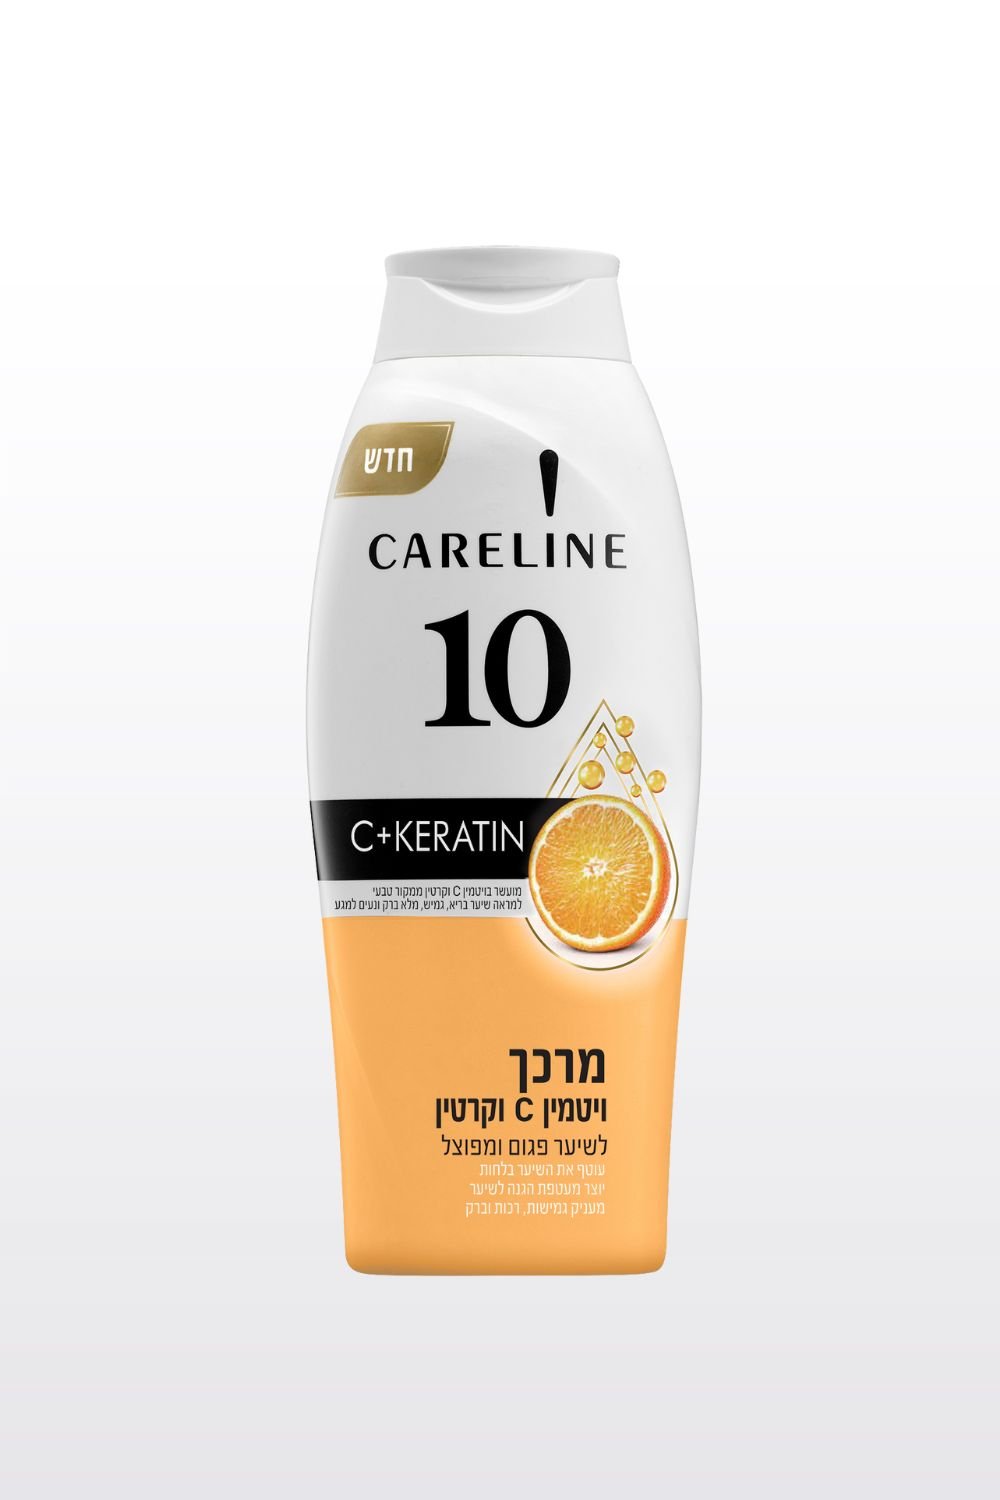 CARELINE - מרכך 10 ויטמין C וקרטין לשיער פגום ומפוצל 700 מ"ל - MASHBIR//365